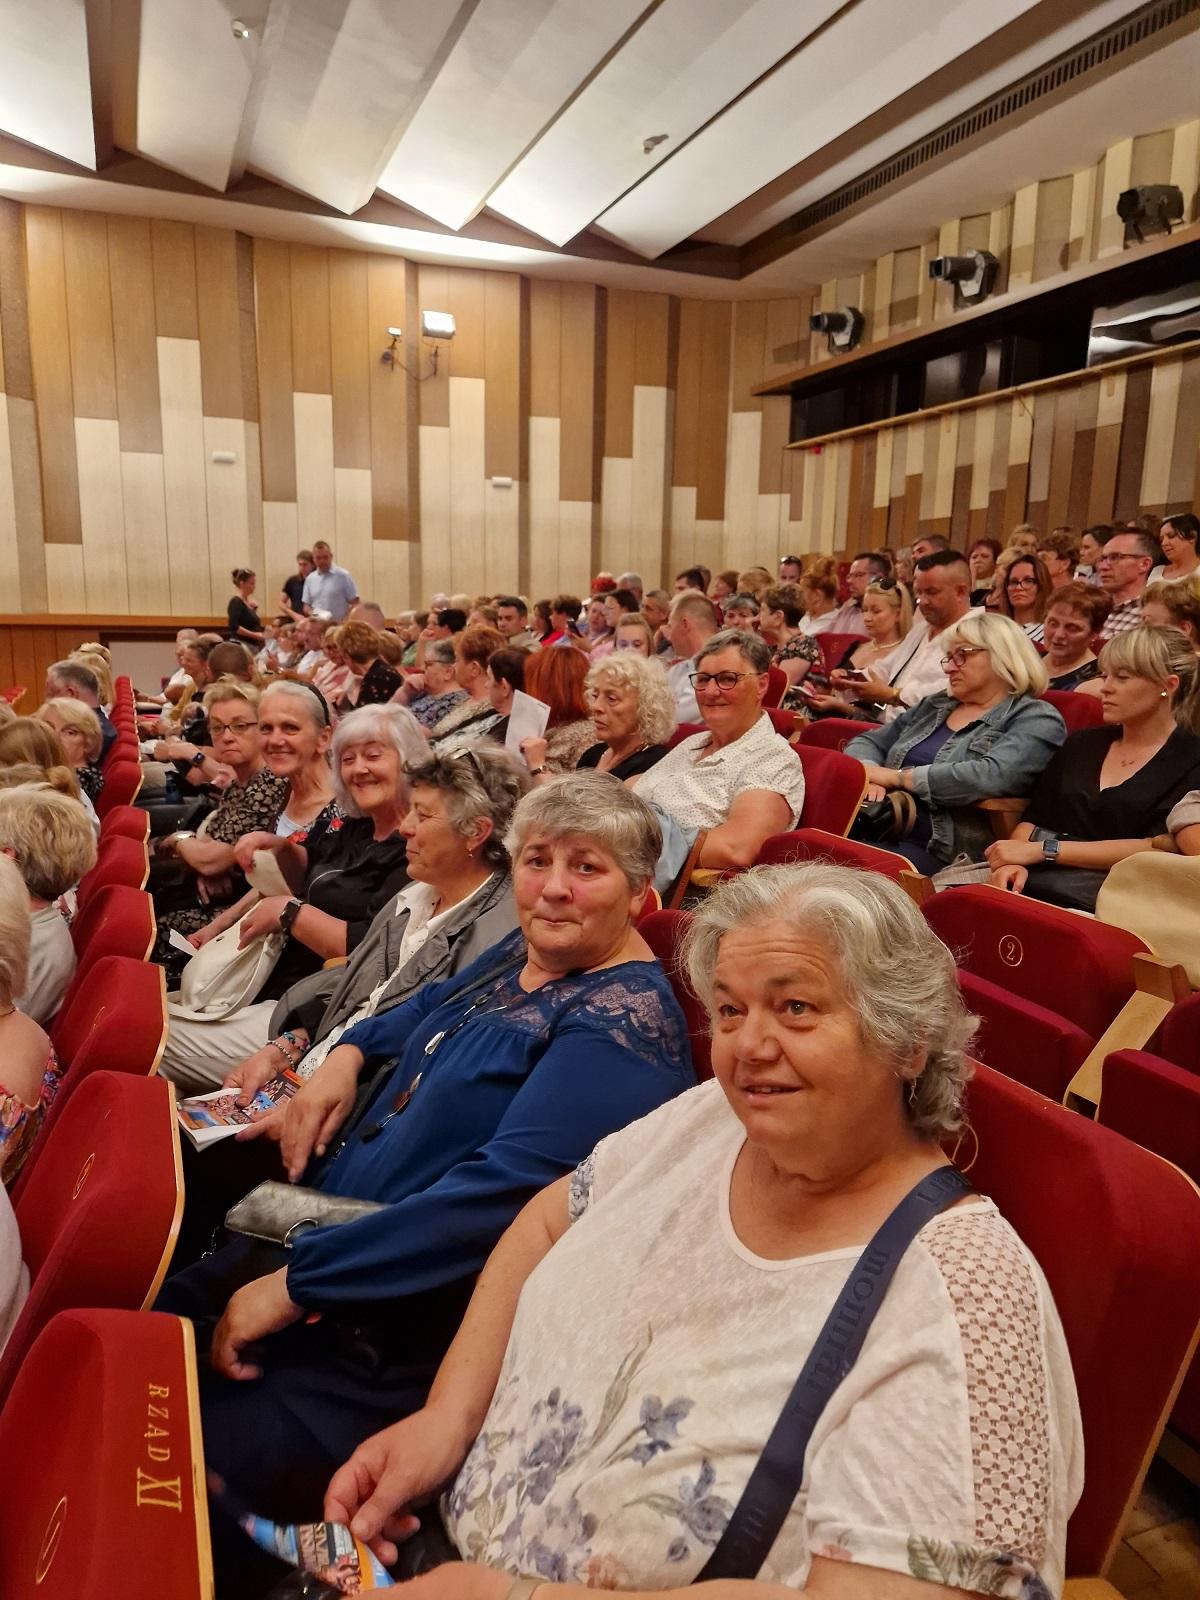 uczestniczki wycieczki w fotelach sali filharmonii słupskiej w oczekiwaniu na spektakl